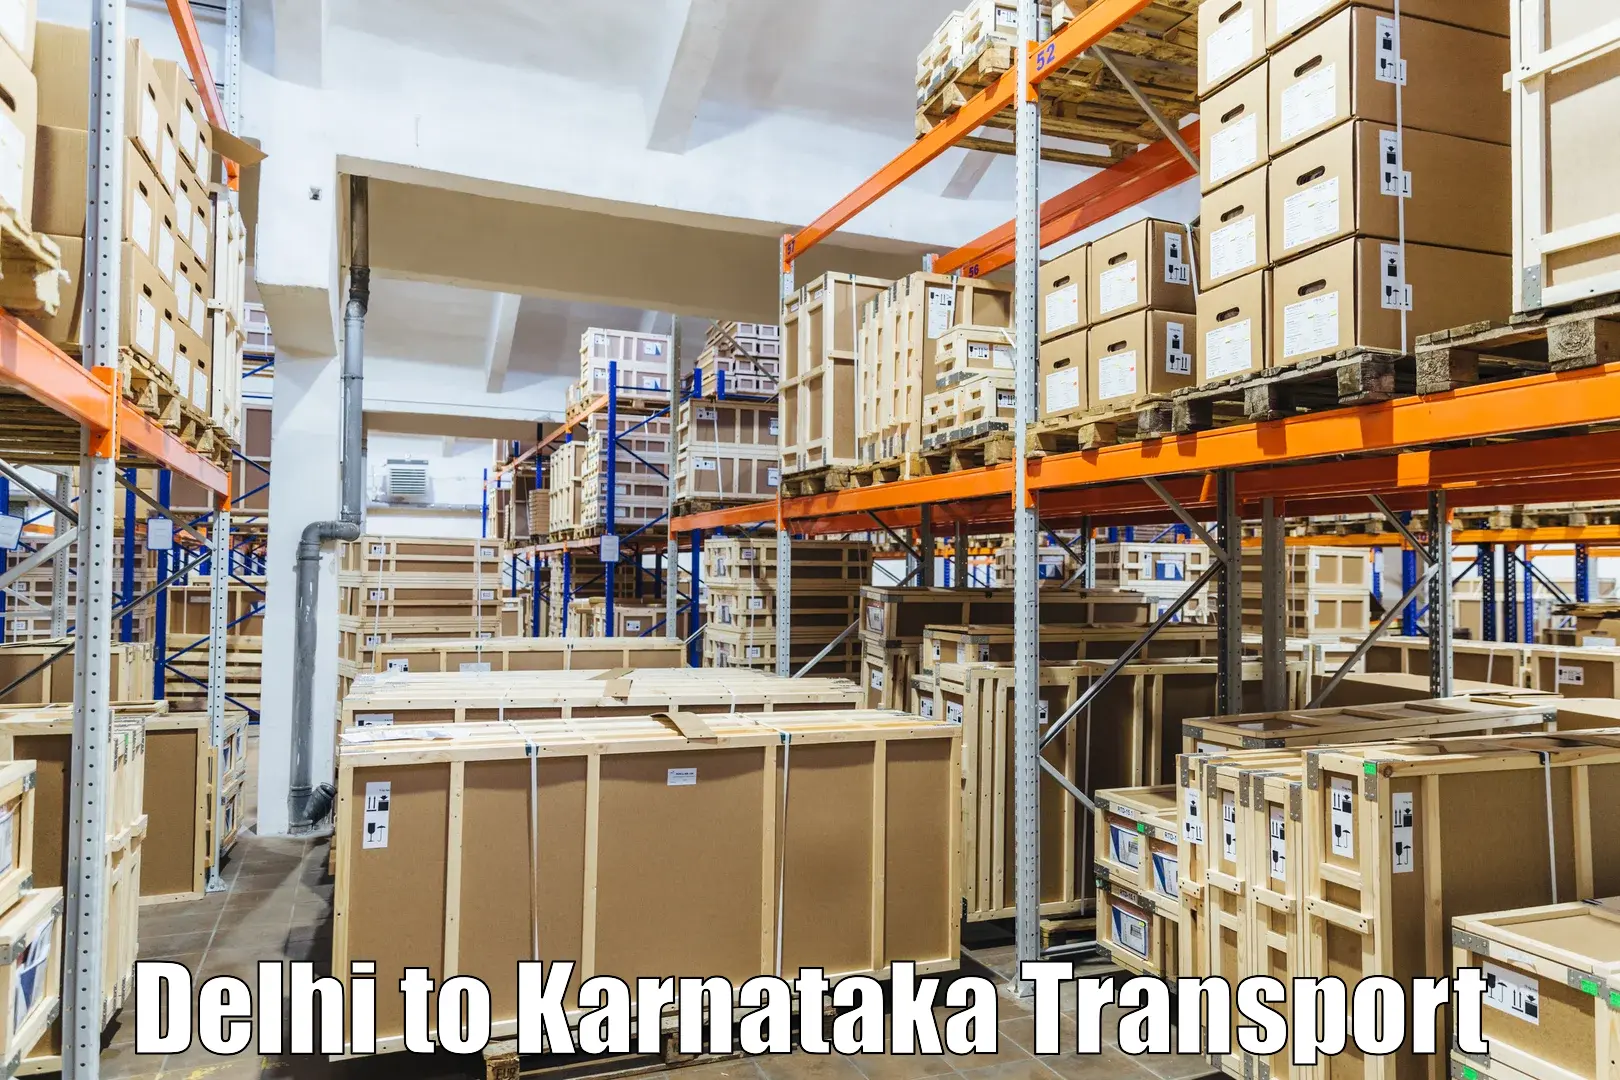 India truck logistics services Delhi to Basavanagudi